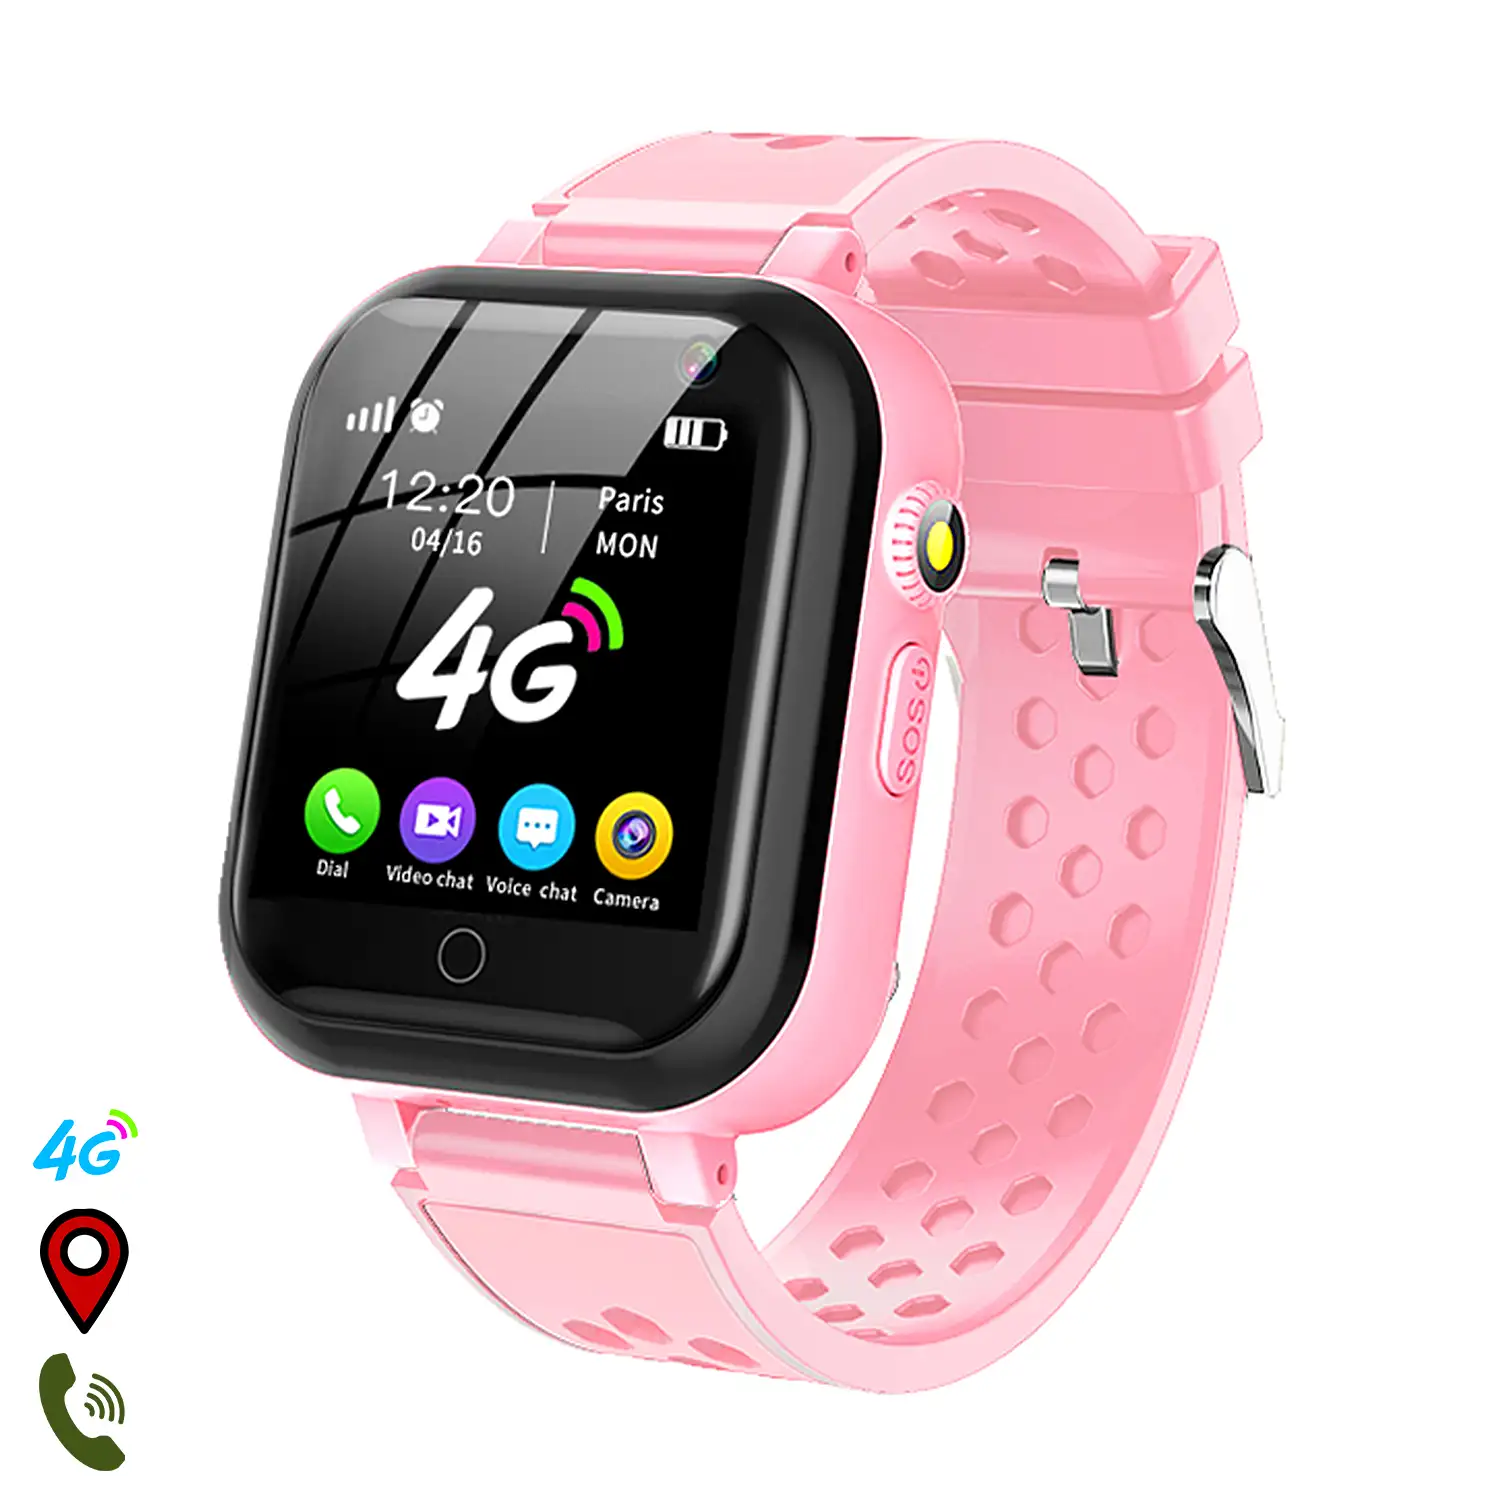 Smartwatch localizador GPS,Wifi y LBS. Videollamada, micro chat, botón SOS.